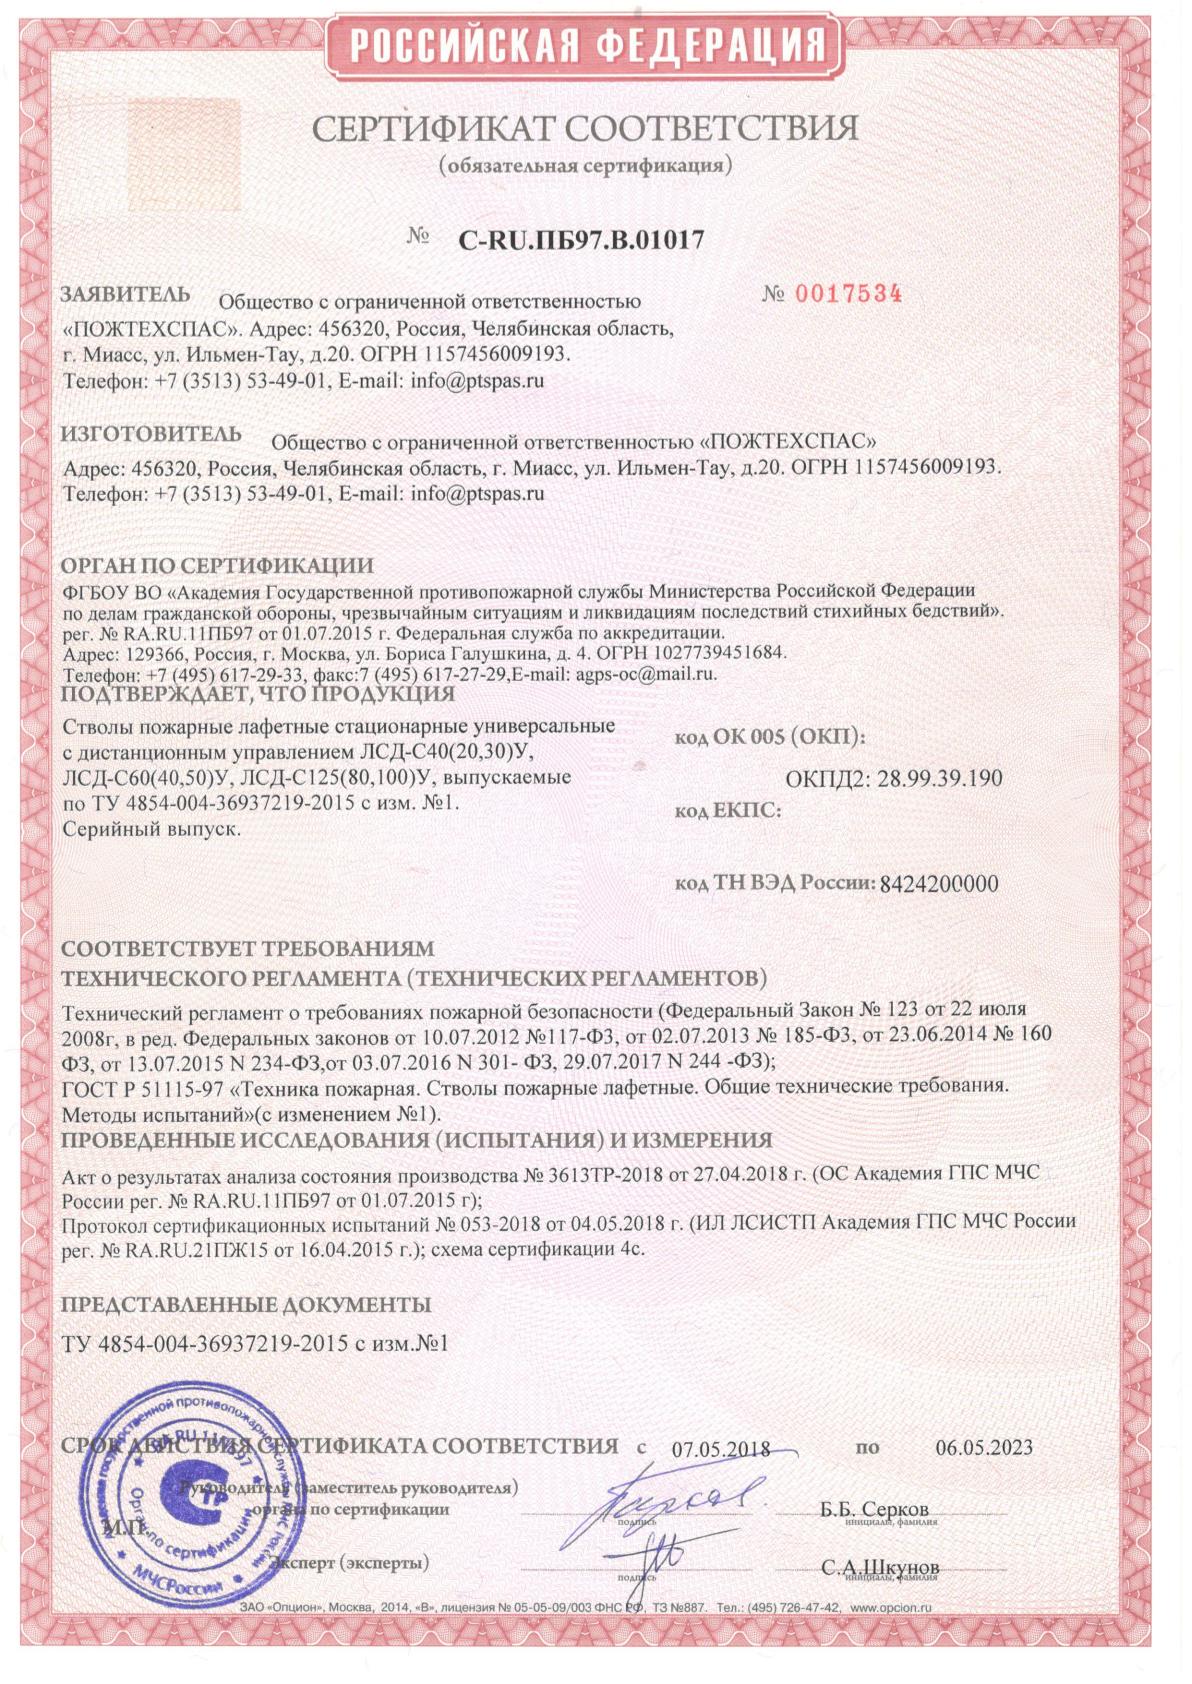 Сертификат соответствия стволы пожарные лафетные стационарные универсальные с ДУ ЛСД-С40(20,30У), С60, С125